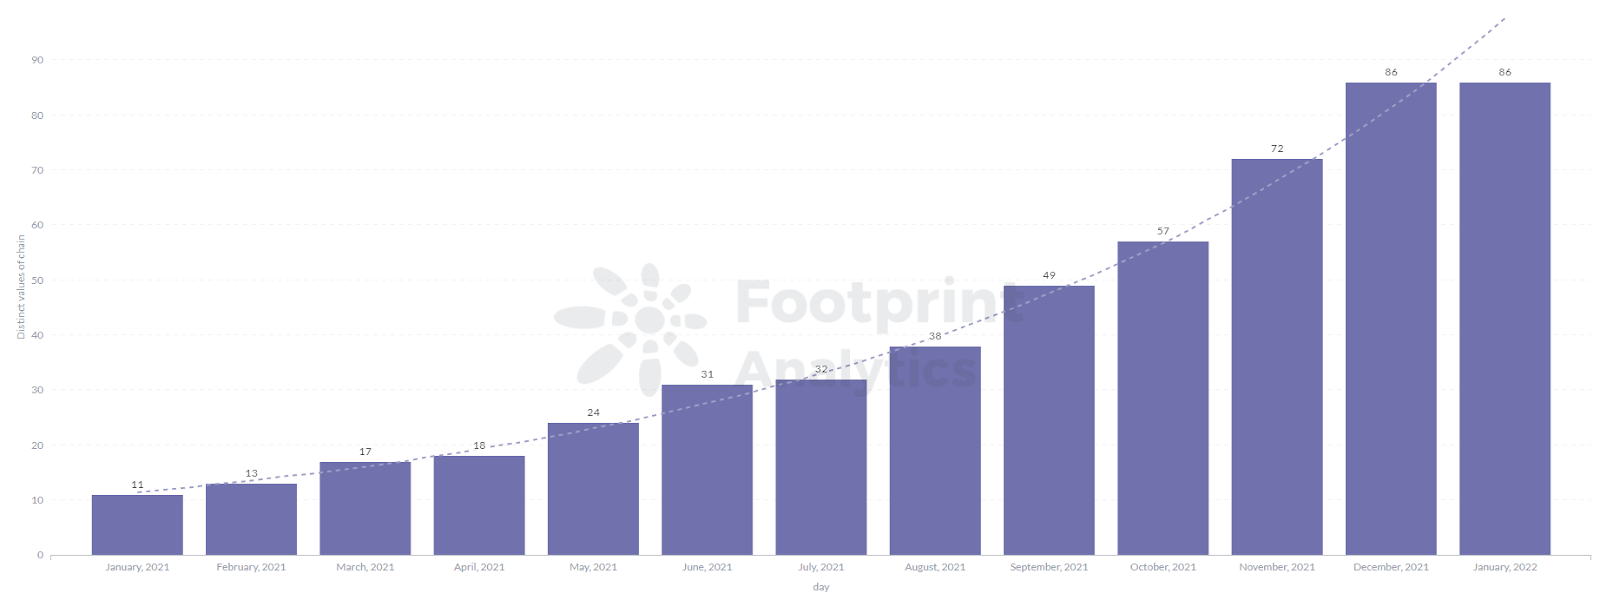 Footprint Analytics - Quantidade Total de Cadeias Públicas em 2021